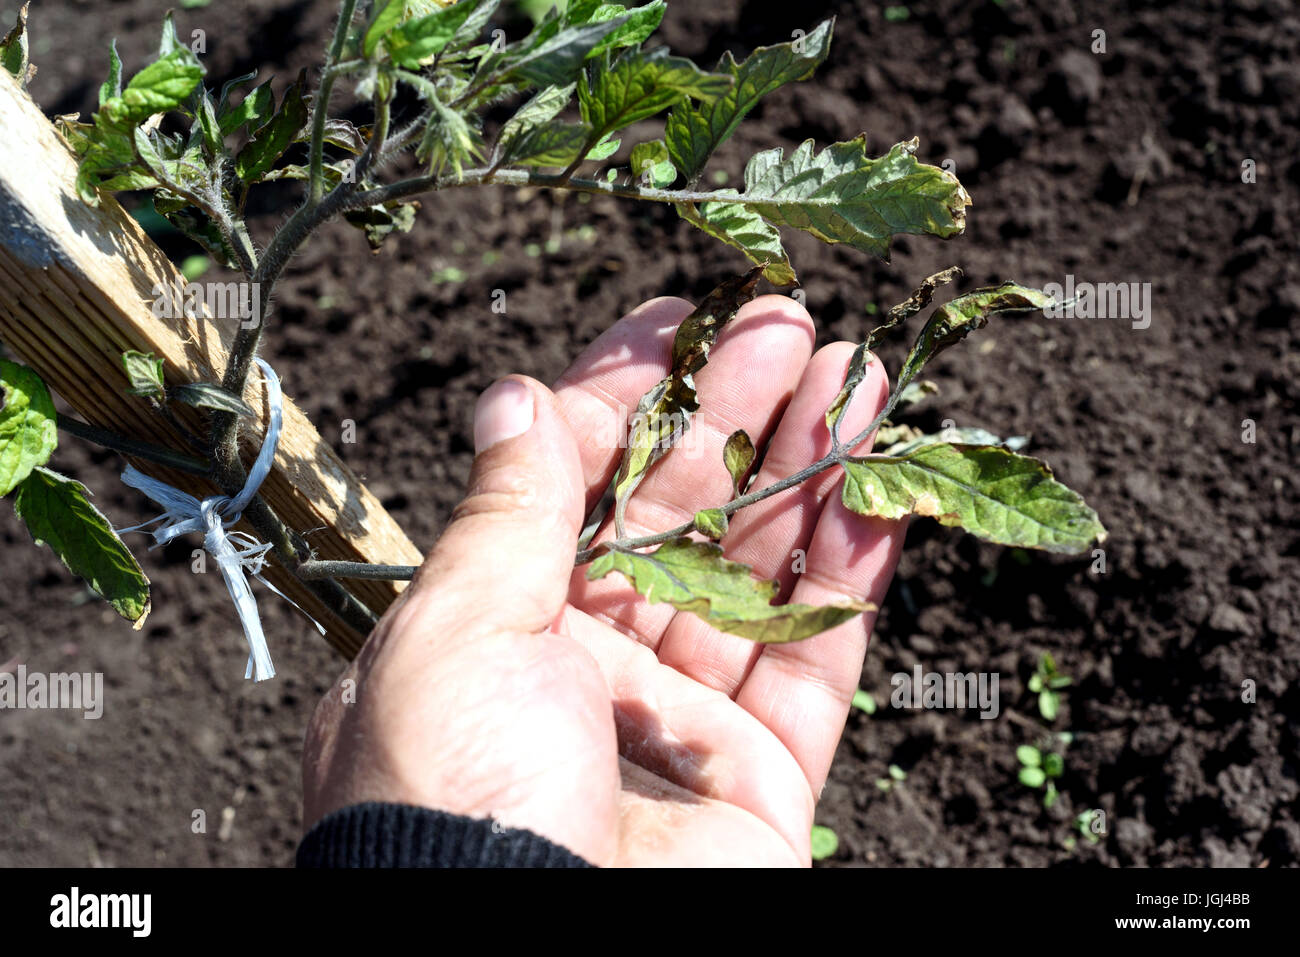 Hombre mano inspecciona un viento en un jardín de plantas de tomate dañado por los fuertes vientos. Consejos de hoja son nítidas y destruidas por los ciclones. Foto de stock